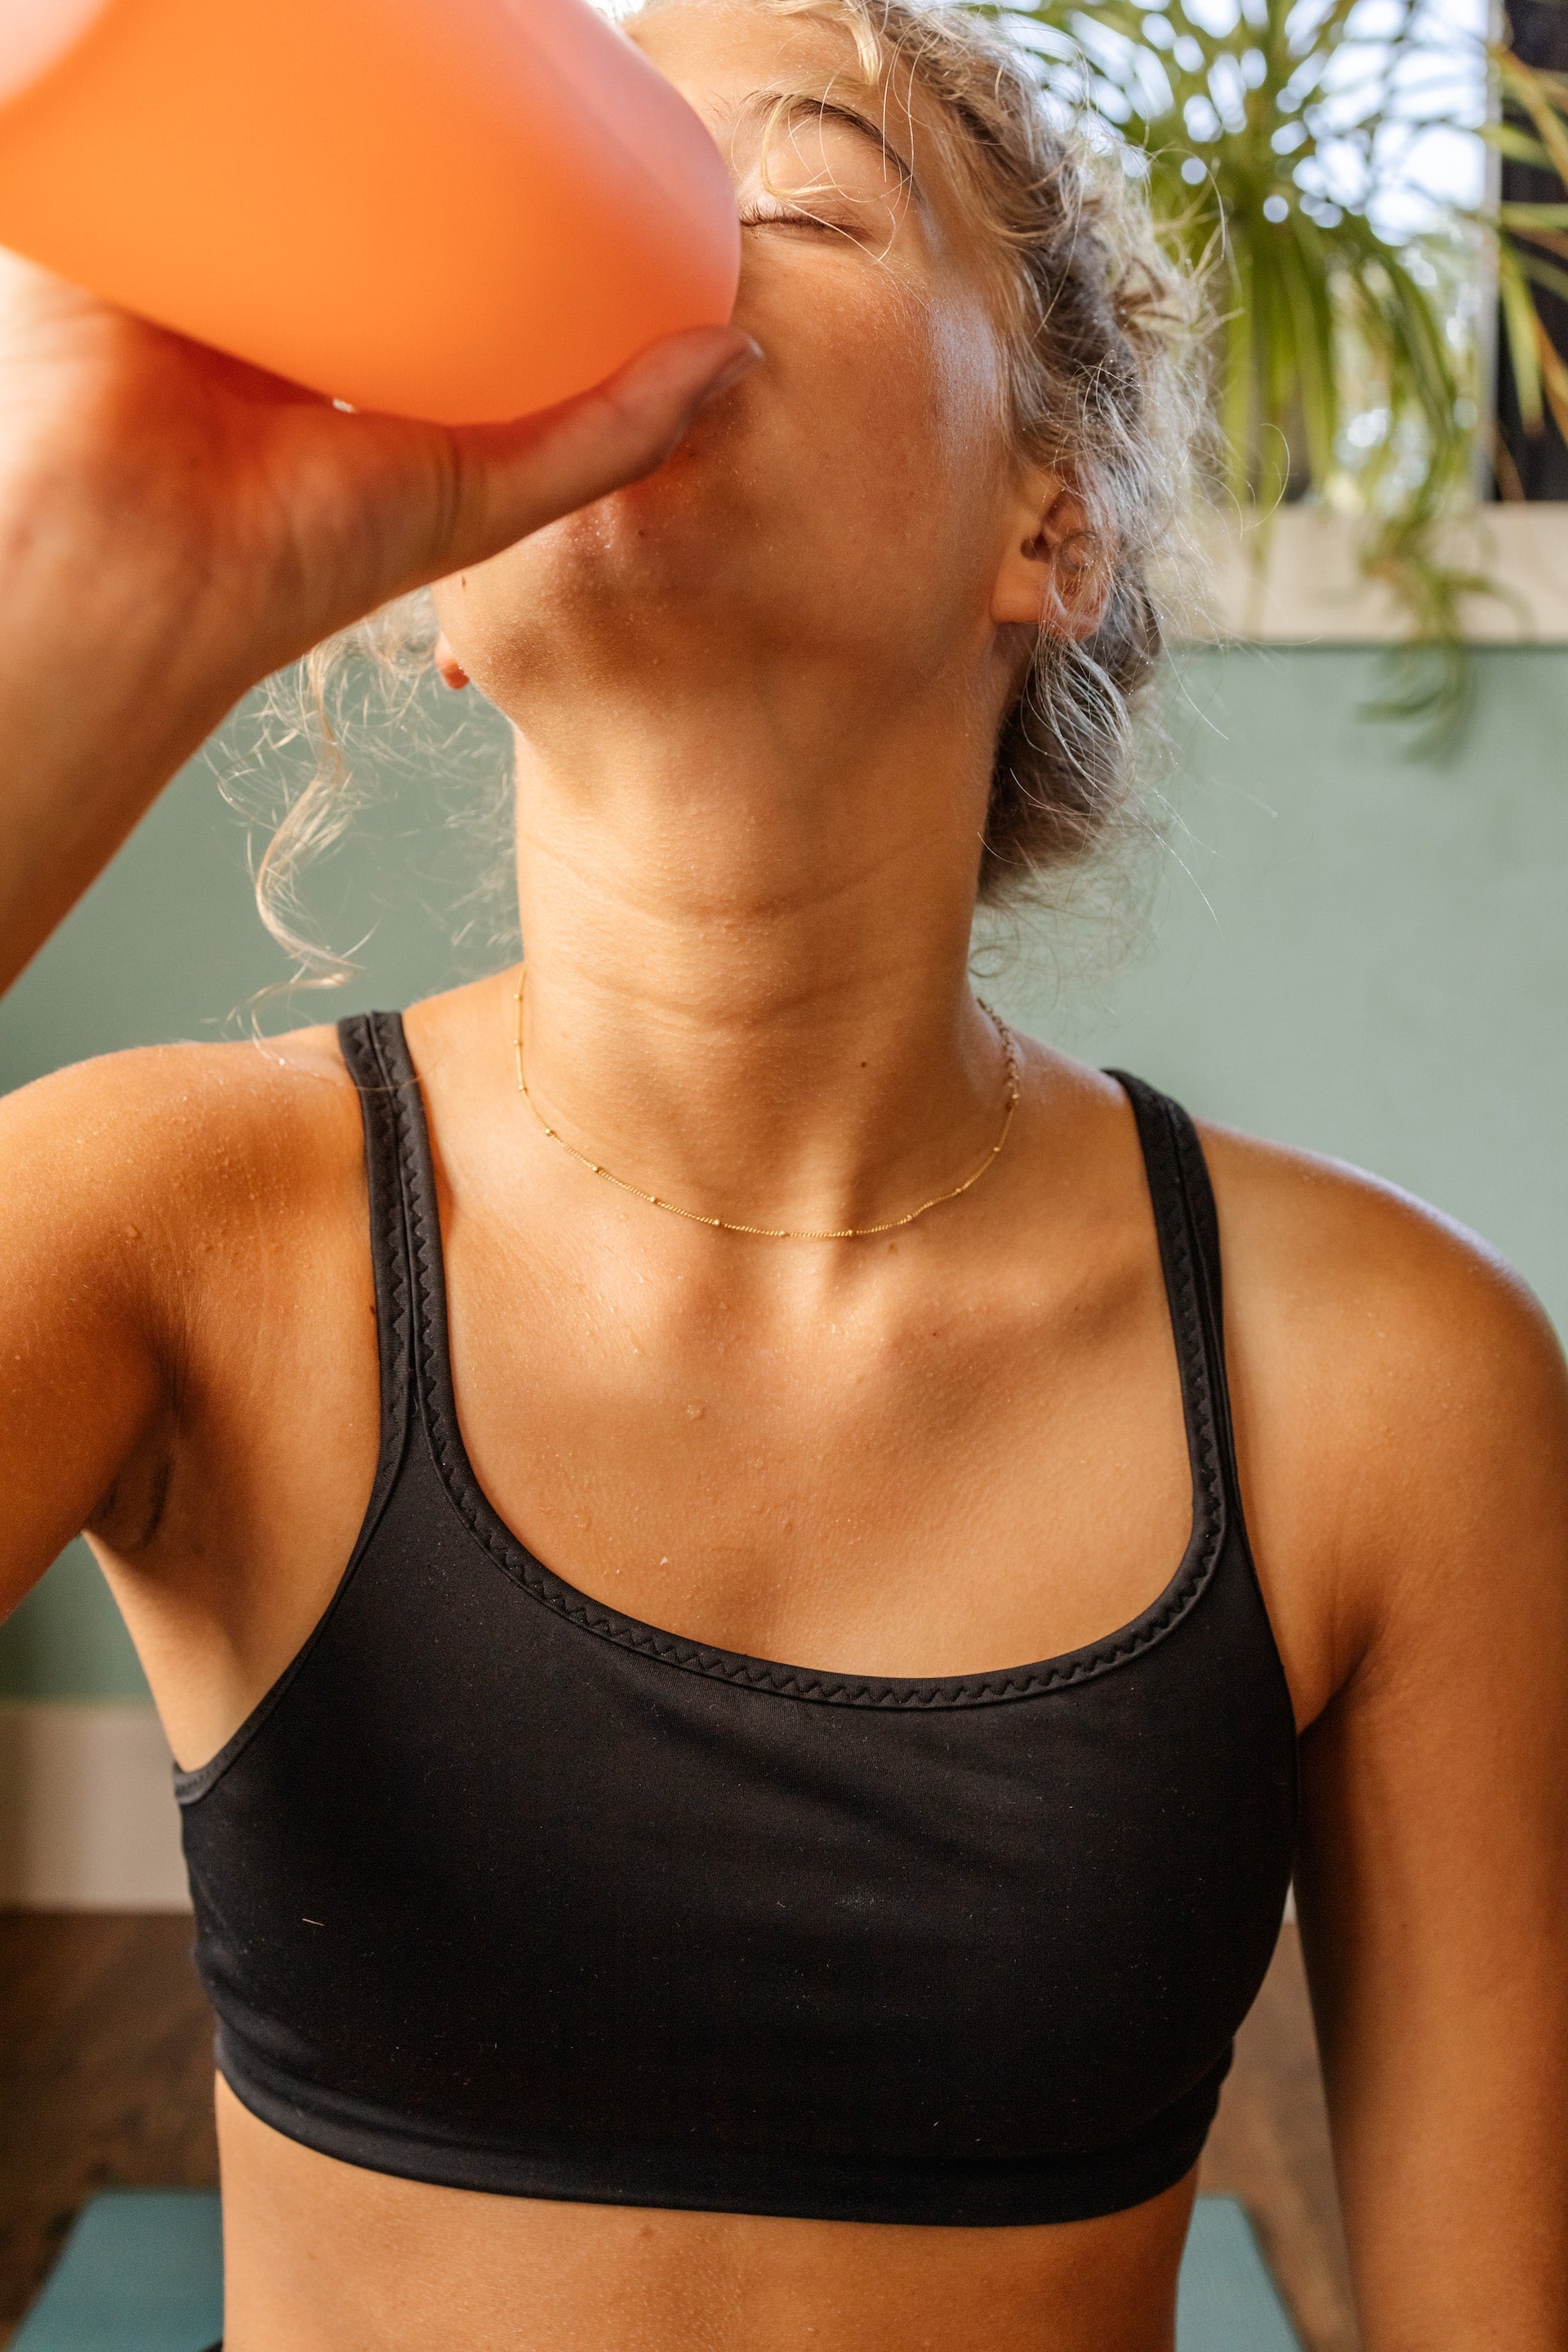 Blonde woman drinking water from an orange water bottle.